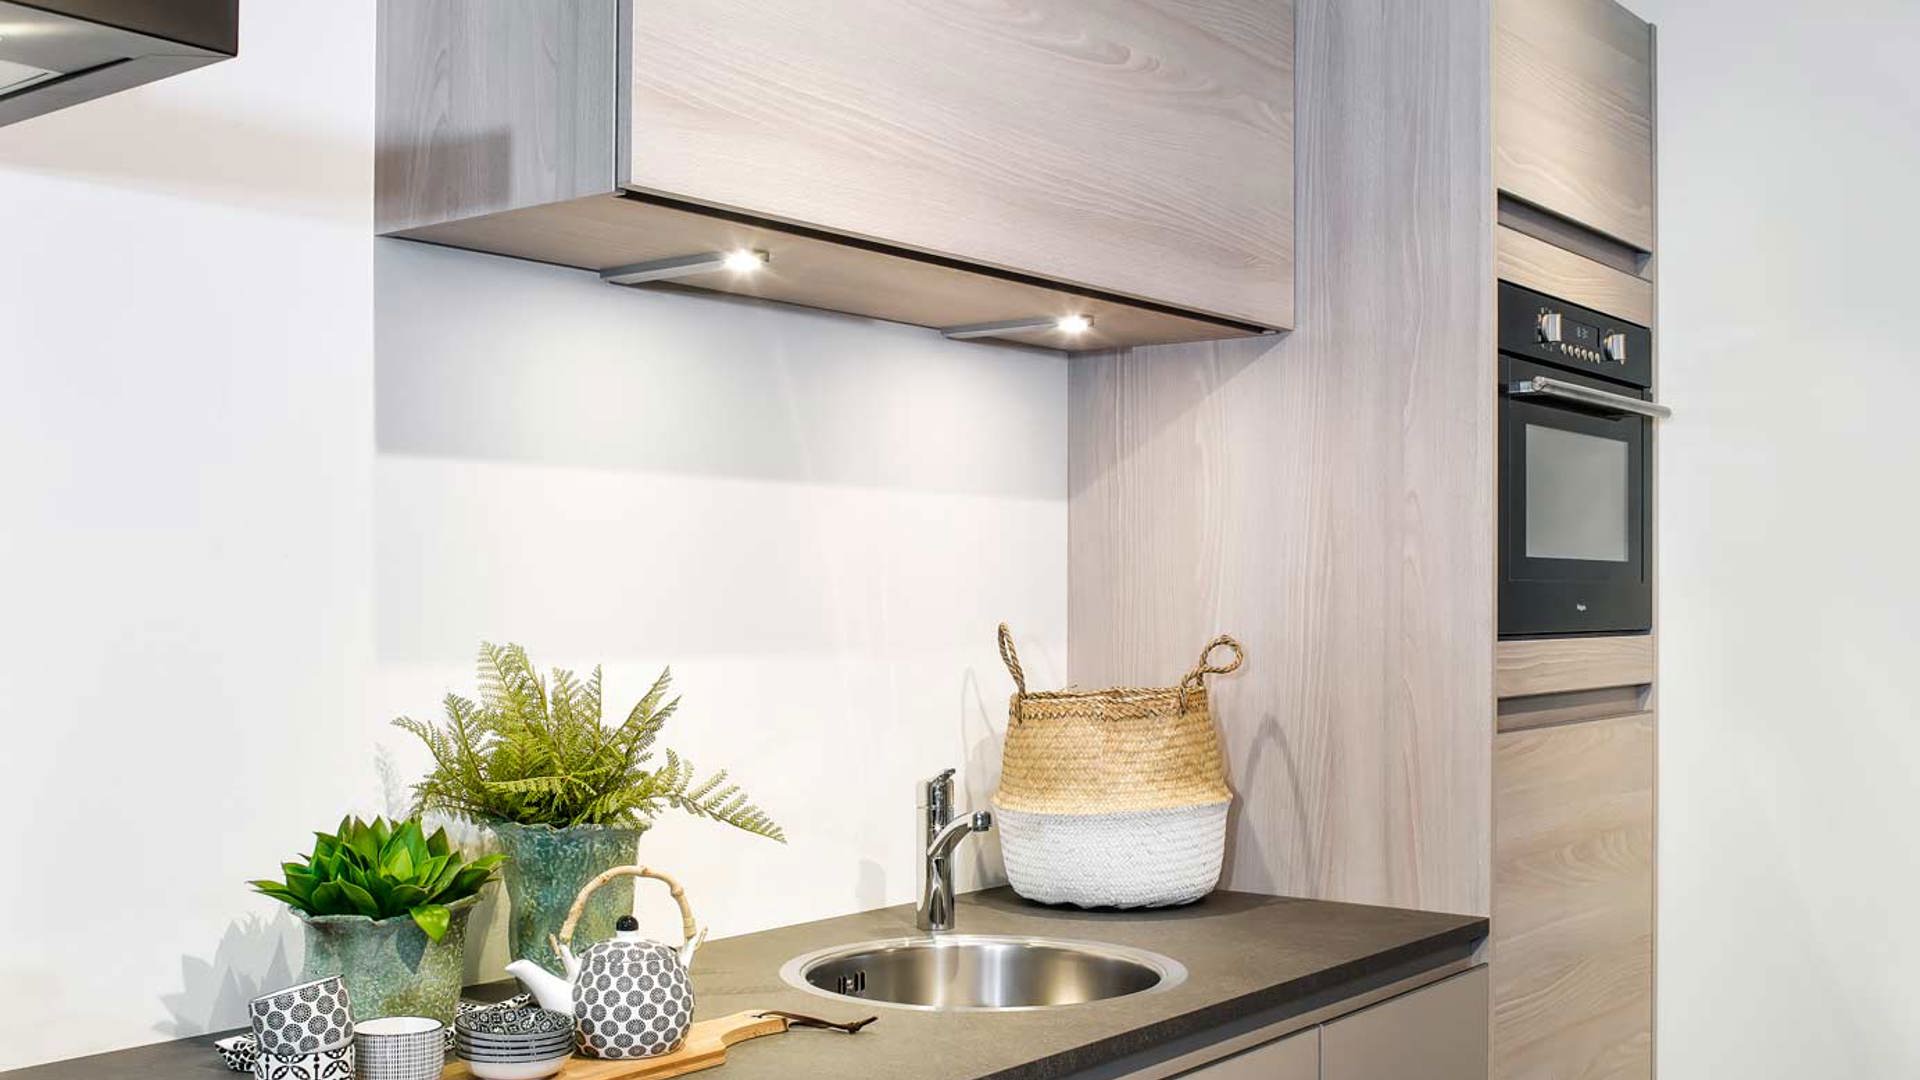 Sloppenwijk Opiaat ontwerp Kleine keuken in moderne stijl. Bekijk foto's en prijzen!